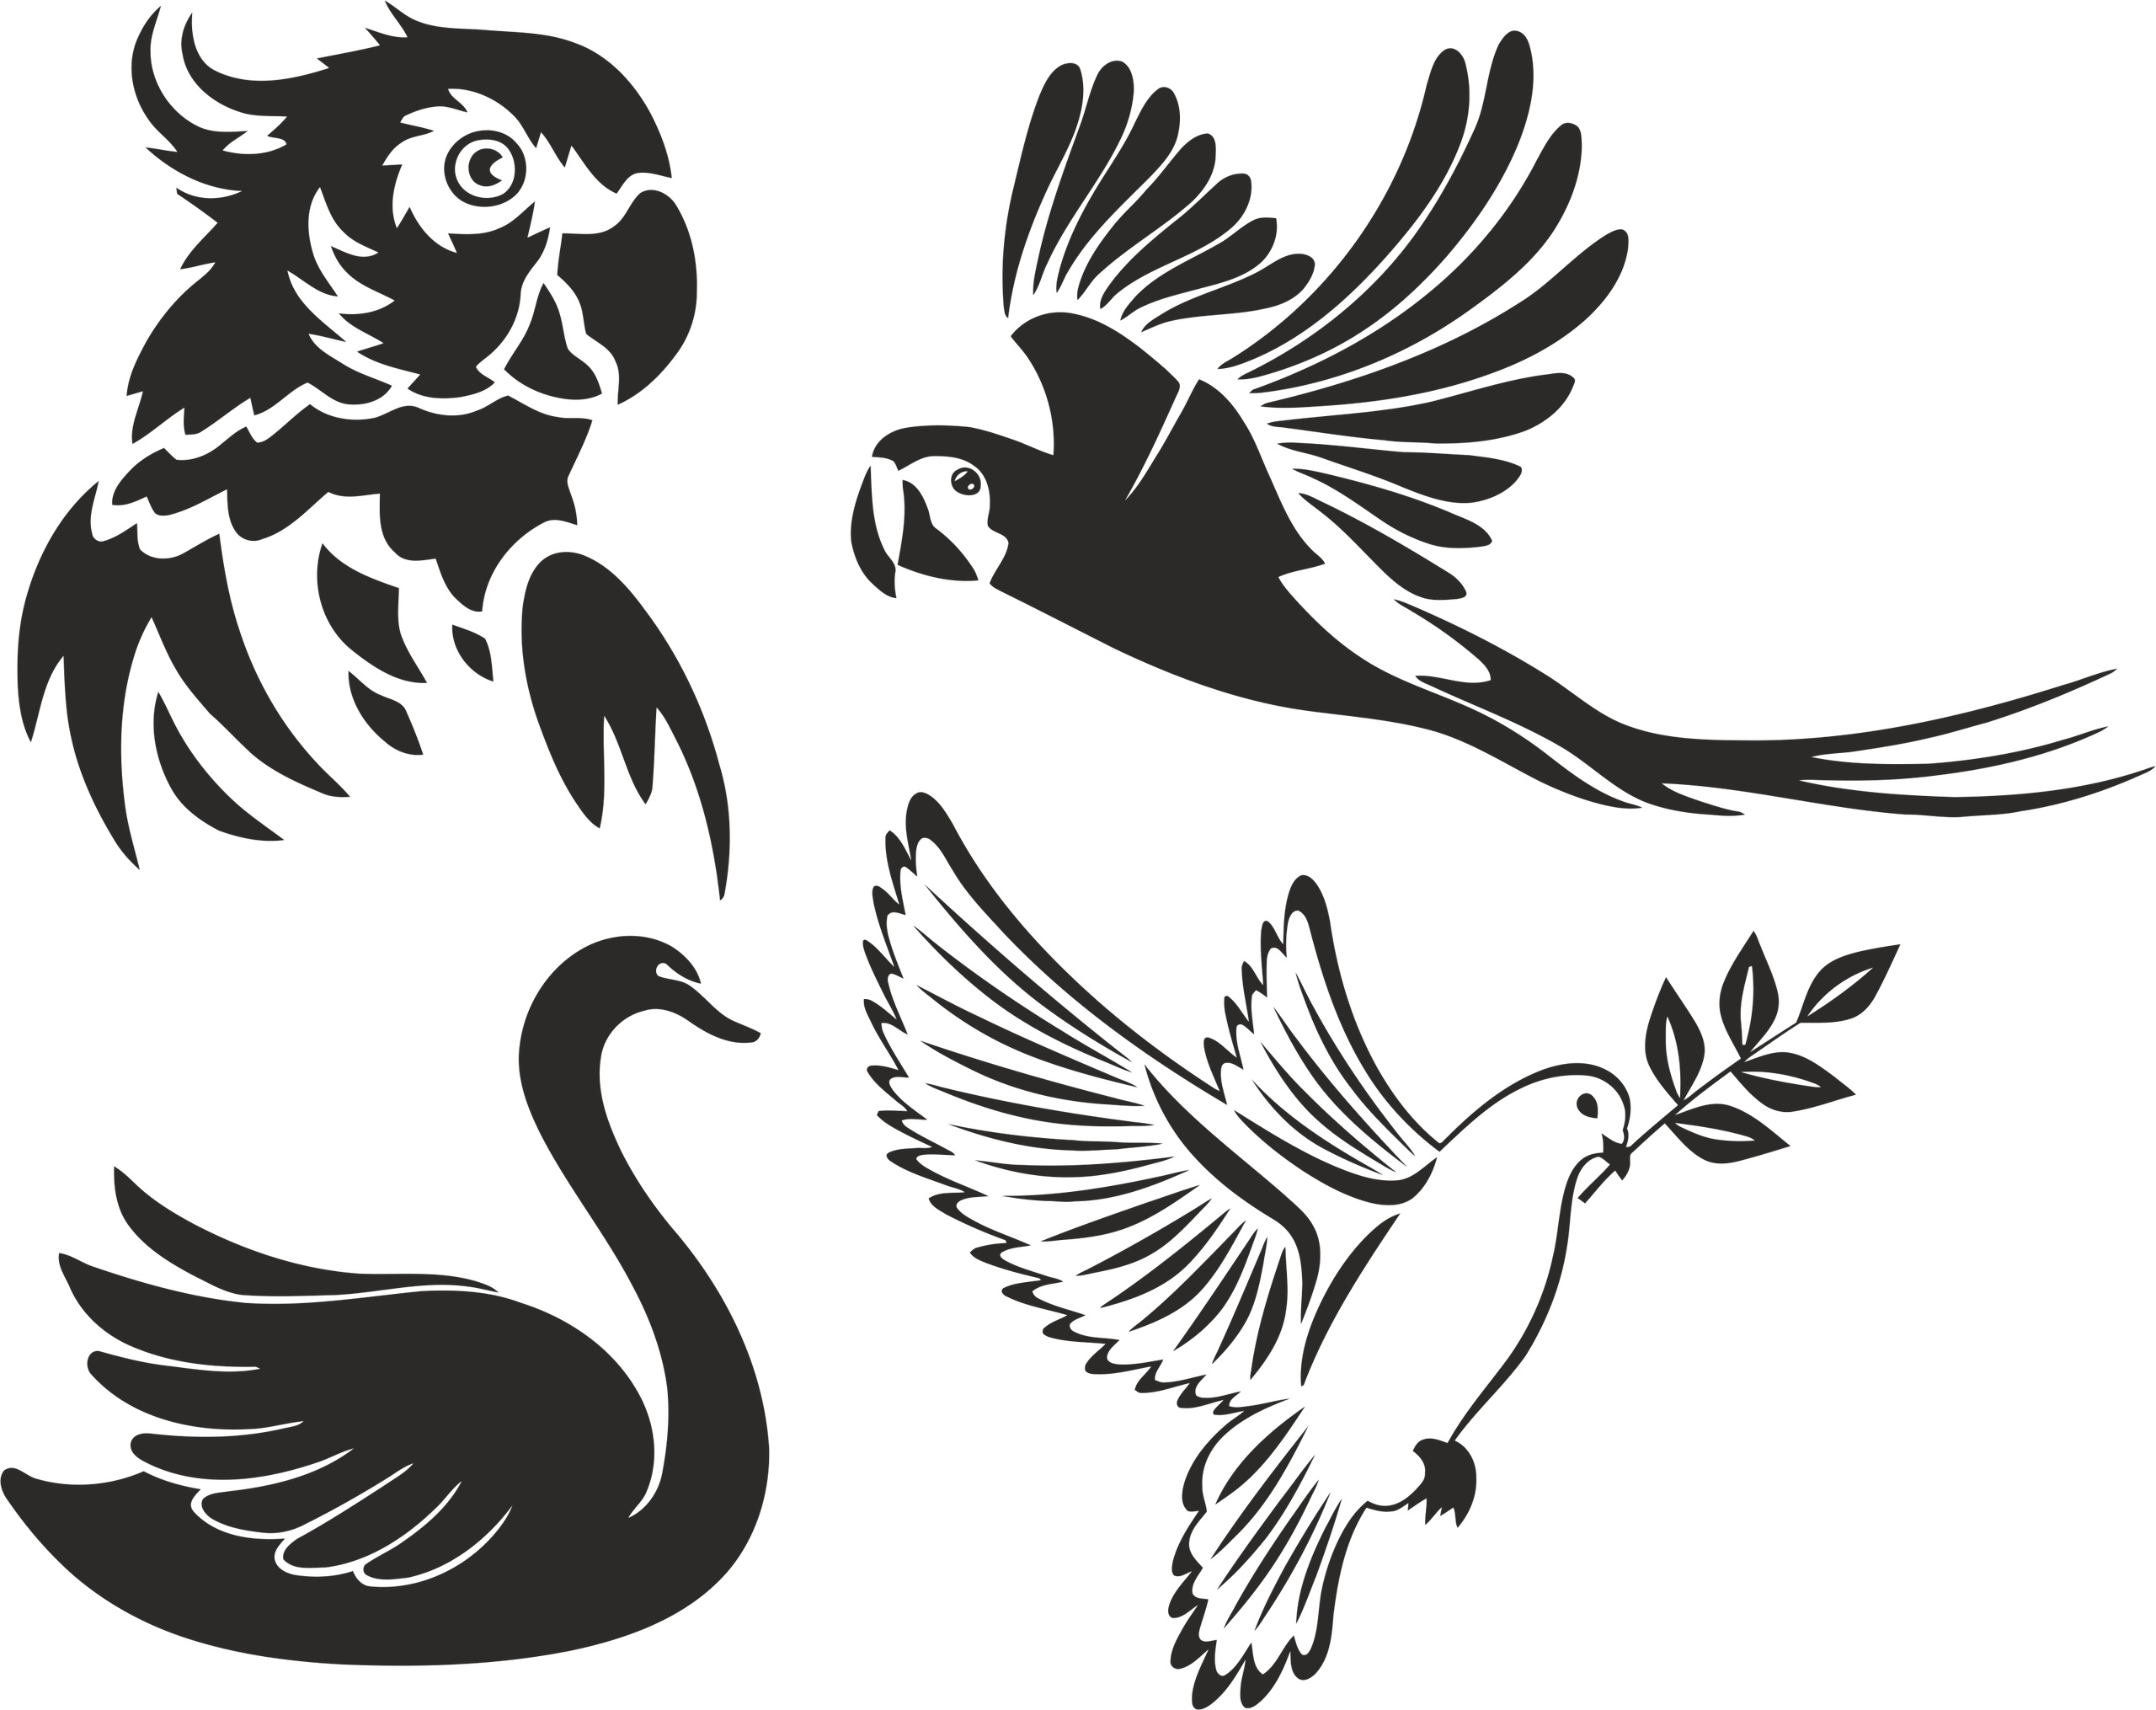 birds-stencils-free-vector-cdr-download-3axis-co